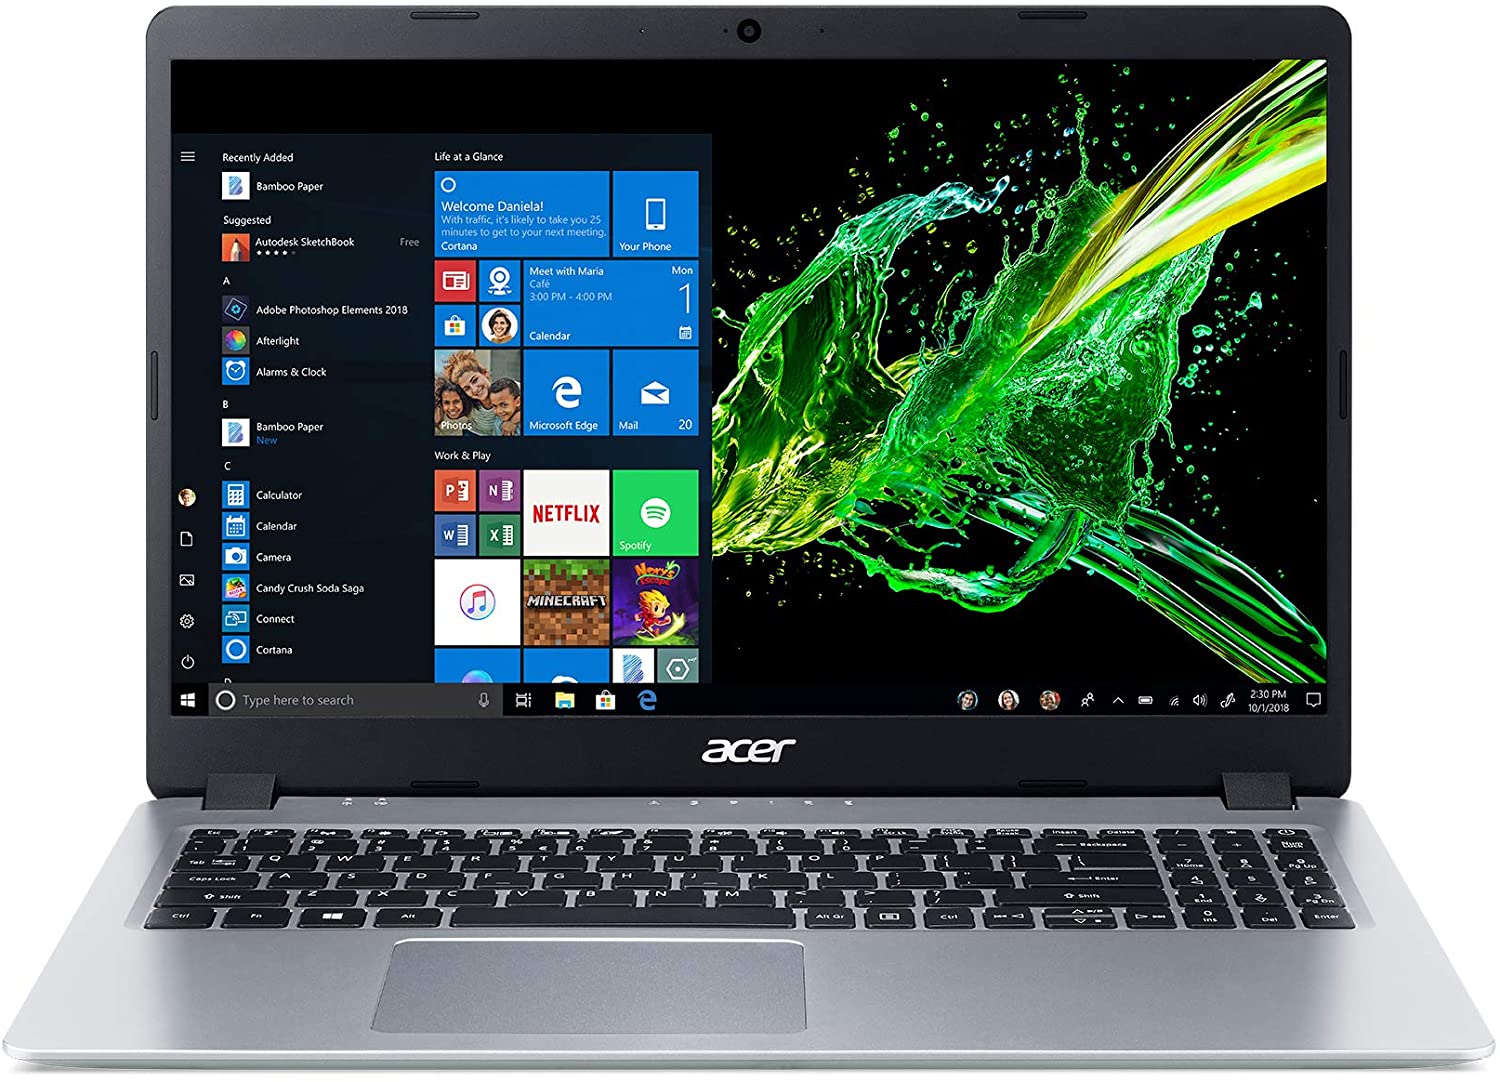 Acer Aspire 5 15.6" FHD PC Laptop, AMD Ryzen 3 3200U, 4GB RAM, 128GB SSD, Windows 10, Silver, A515-43-R19L - image 3 of 3